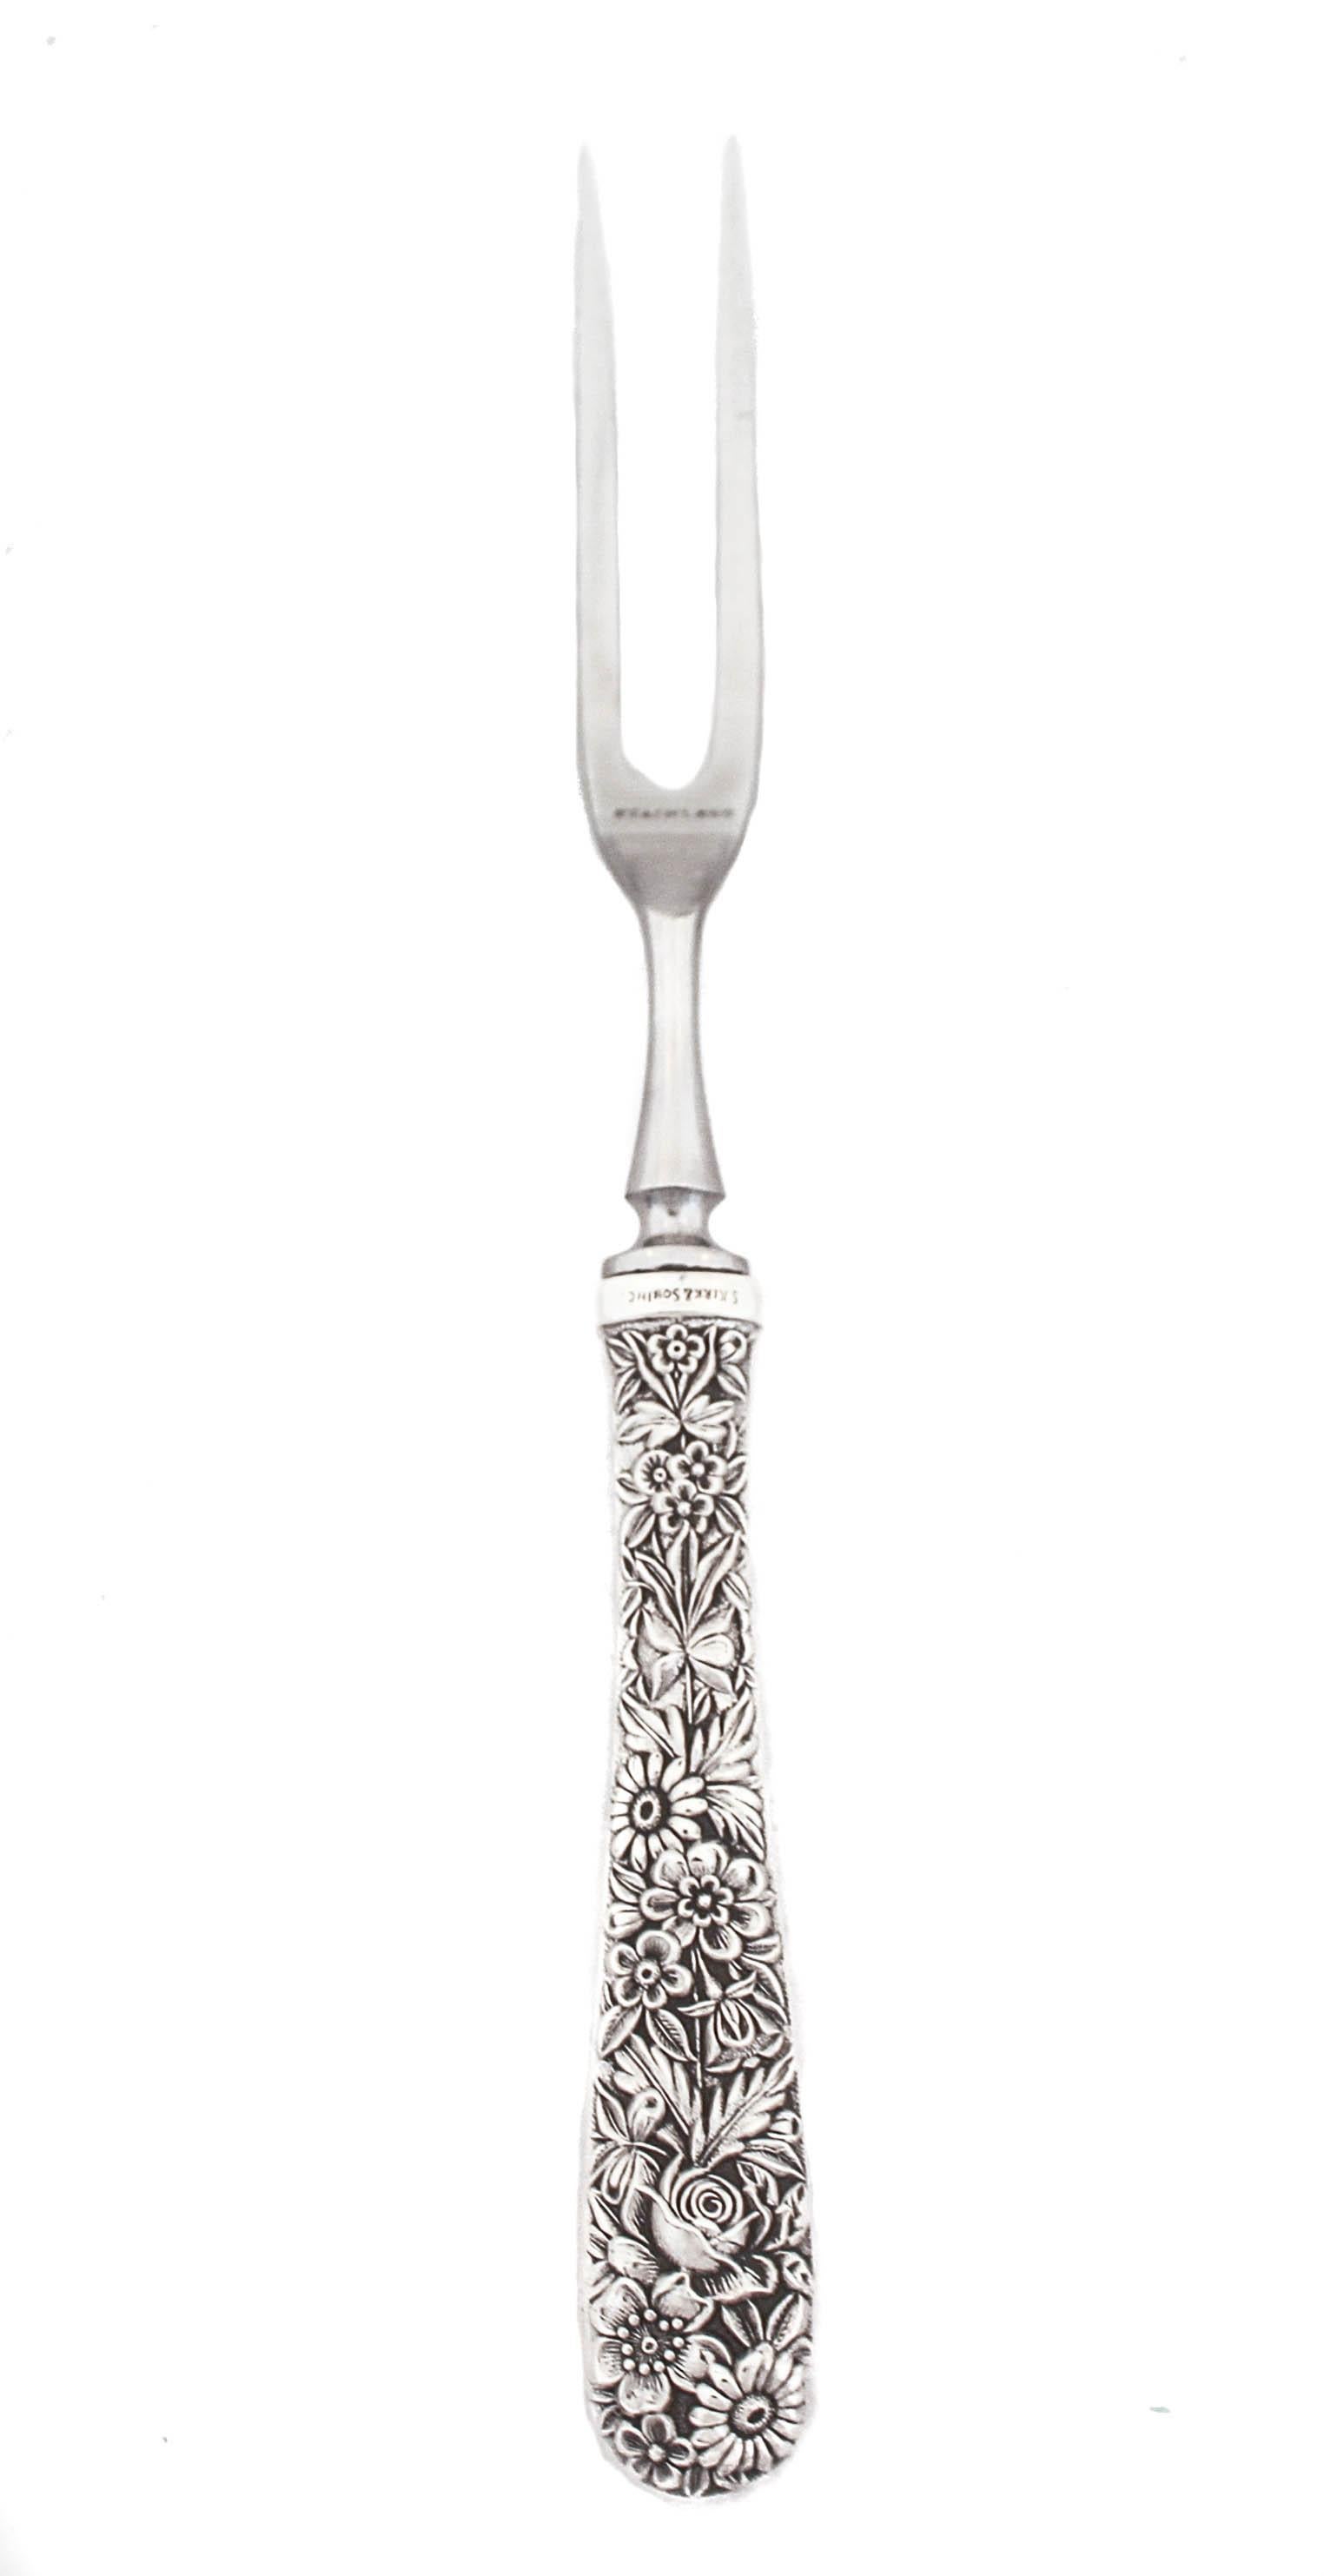 Nous sommes heureux de vous proposer cette fourchette et ce couteau à découper en argent sterling dans le motif Rose par Kirk-Stieff Silver Company. Des fleurs et des feuilles soufflées décorent les poignées dans le motif classique Rose qui est